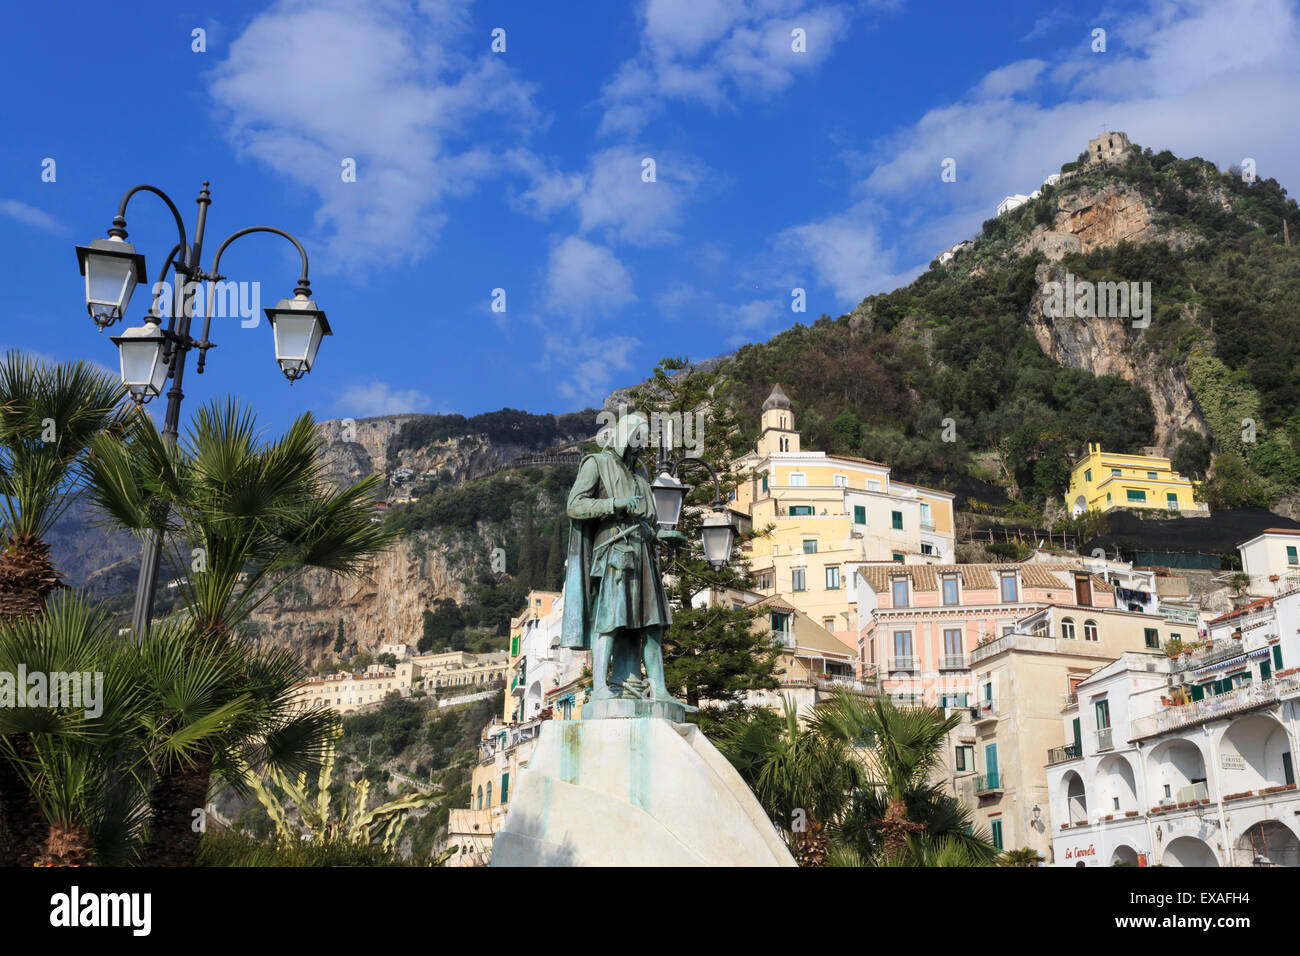 Vista dal lungomare di statua, città di Amalfi e hillside, Costiera Amalfitana (Costiera Amalfitana), sito UNESCO, Campania, Italia Foto Stock